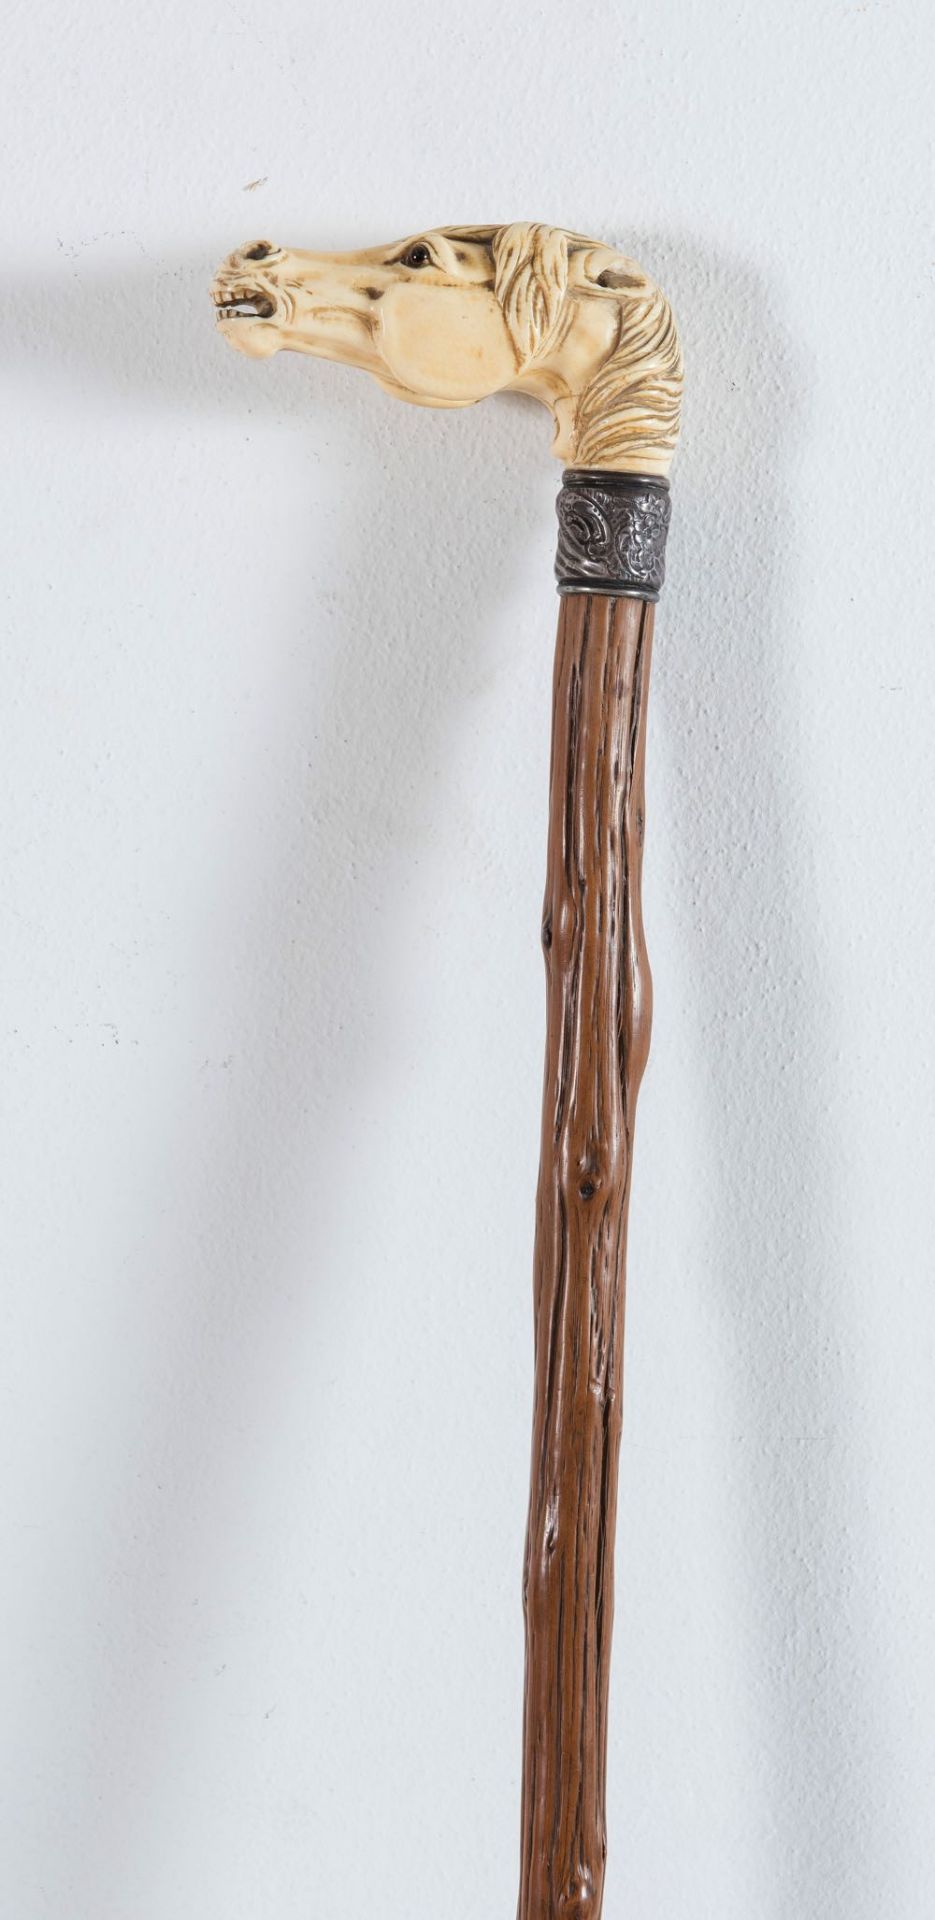 Bastone da passeggio in legno con impugnatura in avorio, metà del XIX secolo.